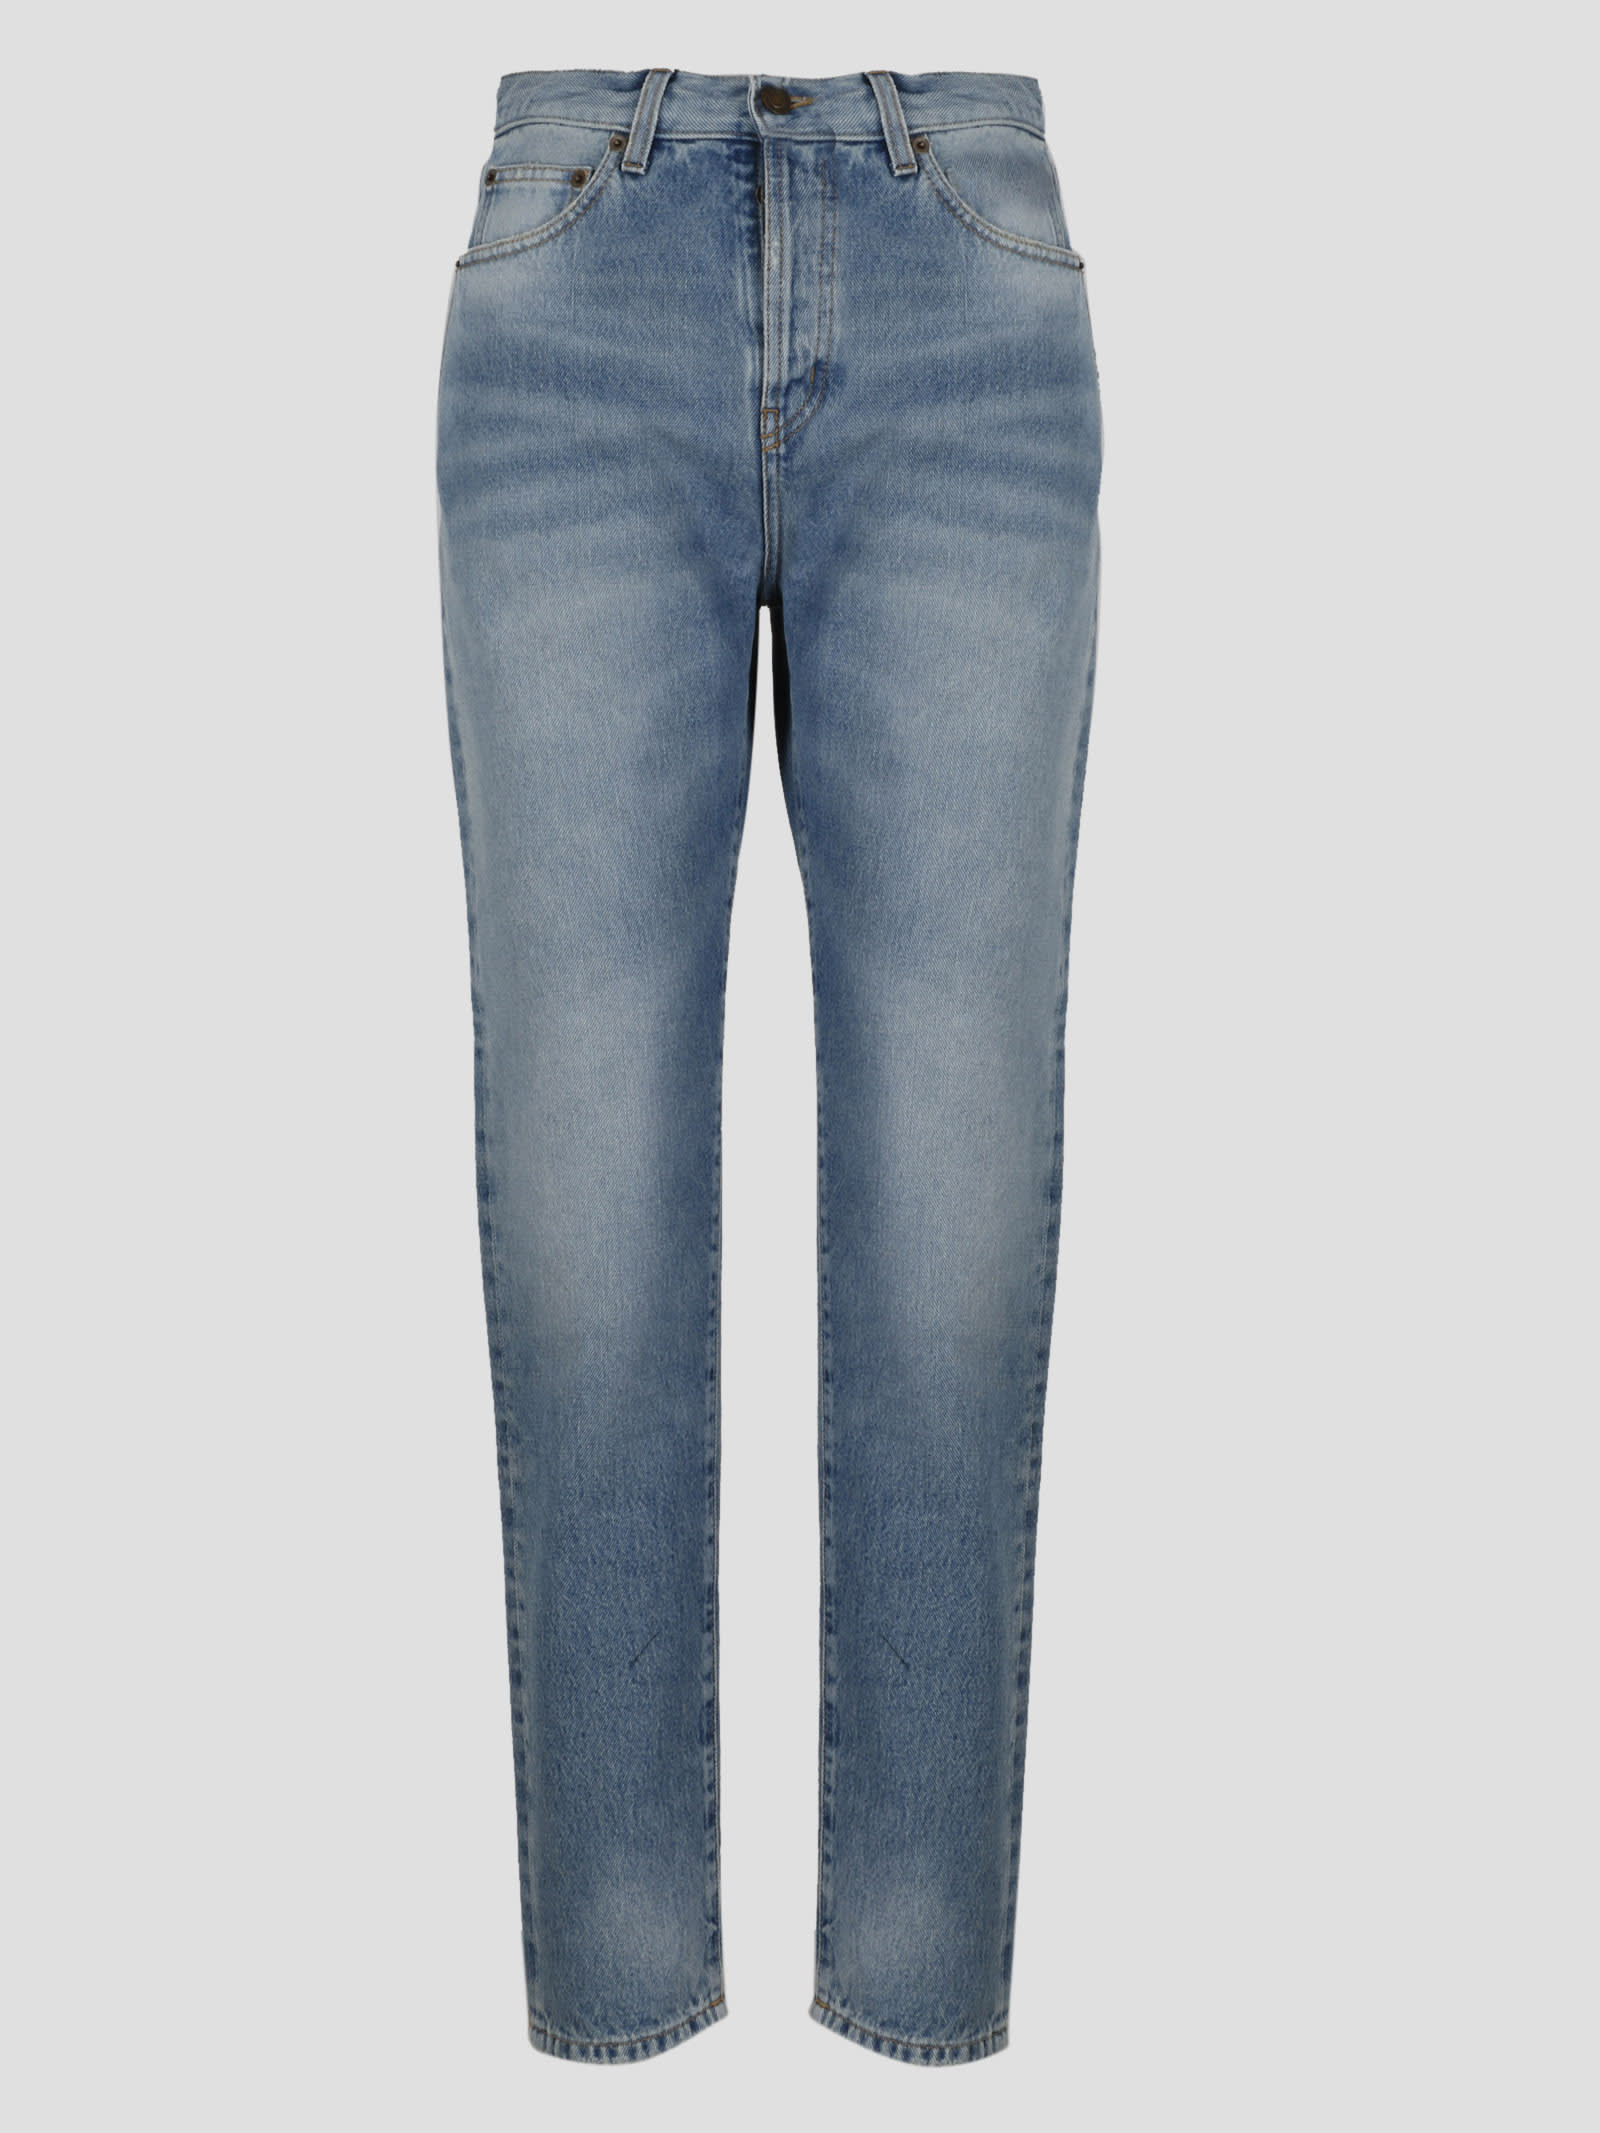 Saint Laurent 5-pocket Slim Jeans